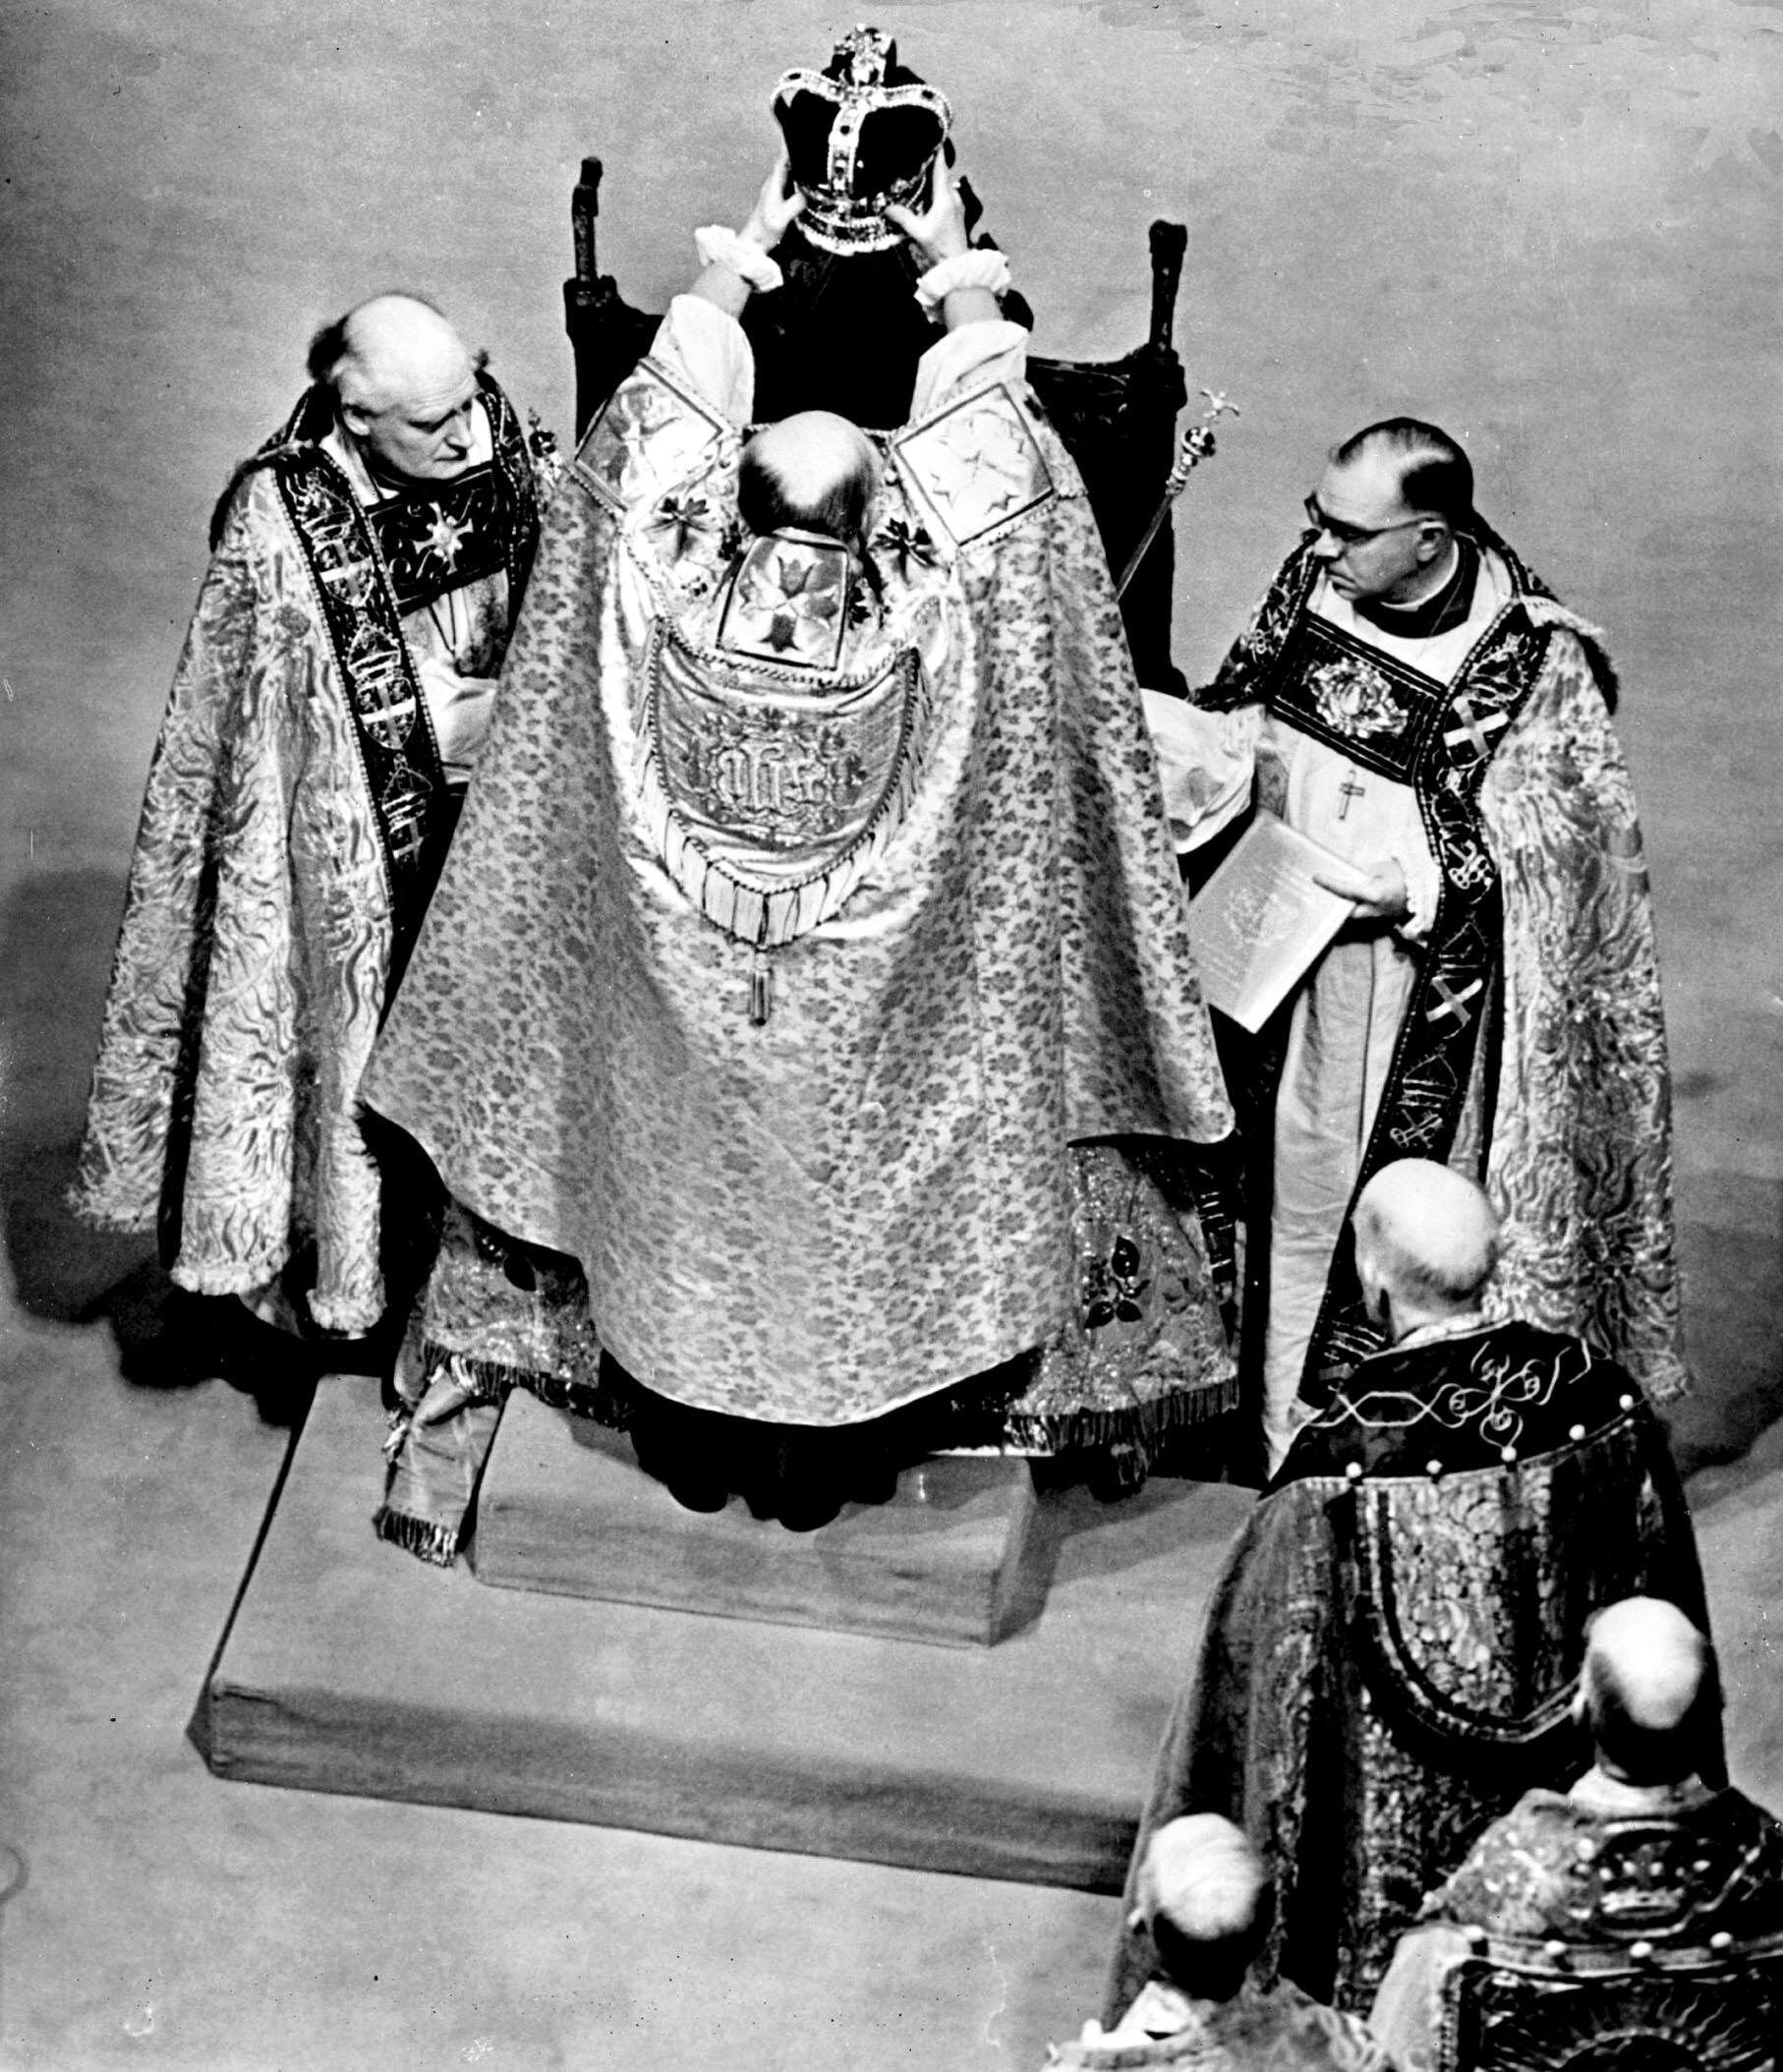 La coronación de Isabel II en 1953 fue profundamente religiosa y supuso un impulso moral en los duros años de la posguerra, ya que millones de personas de todo el mundo celebraron el día histórico.